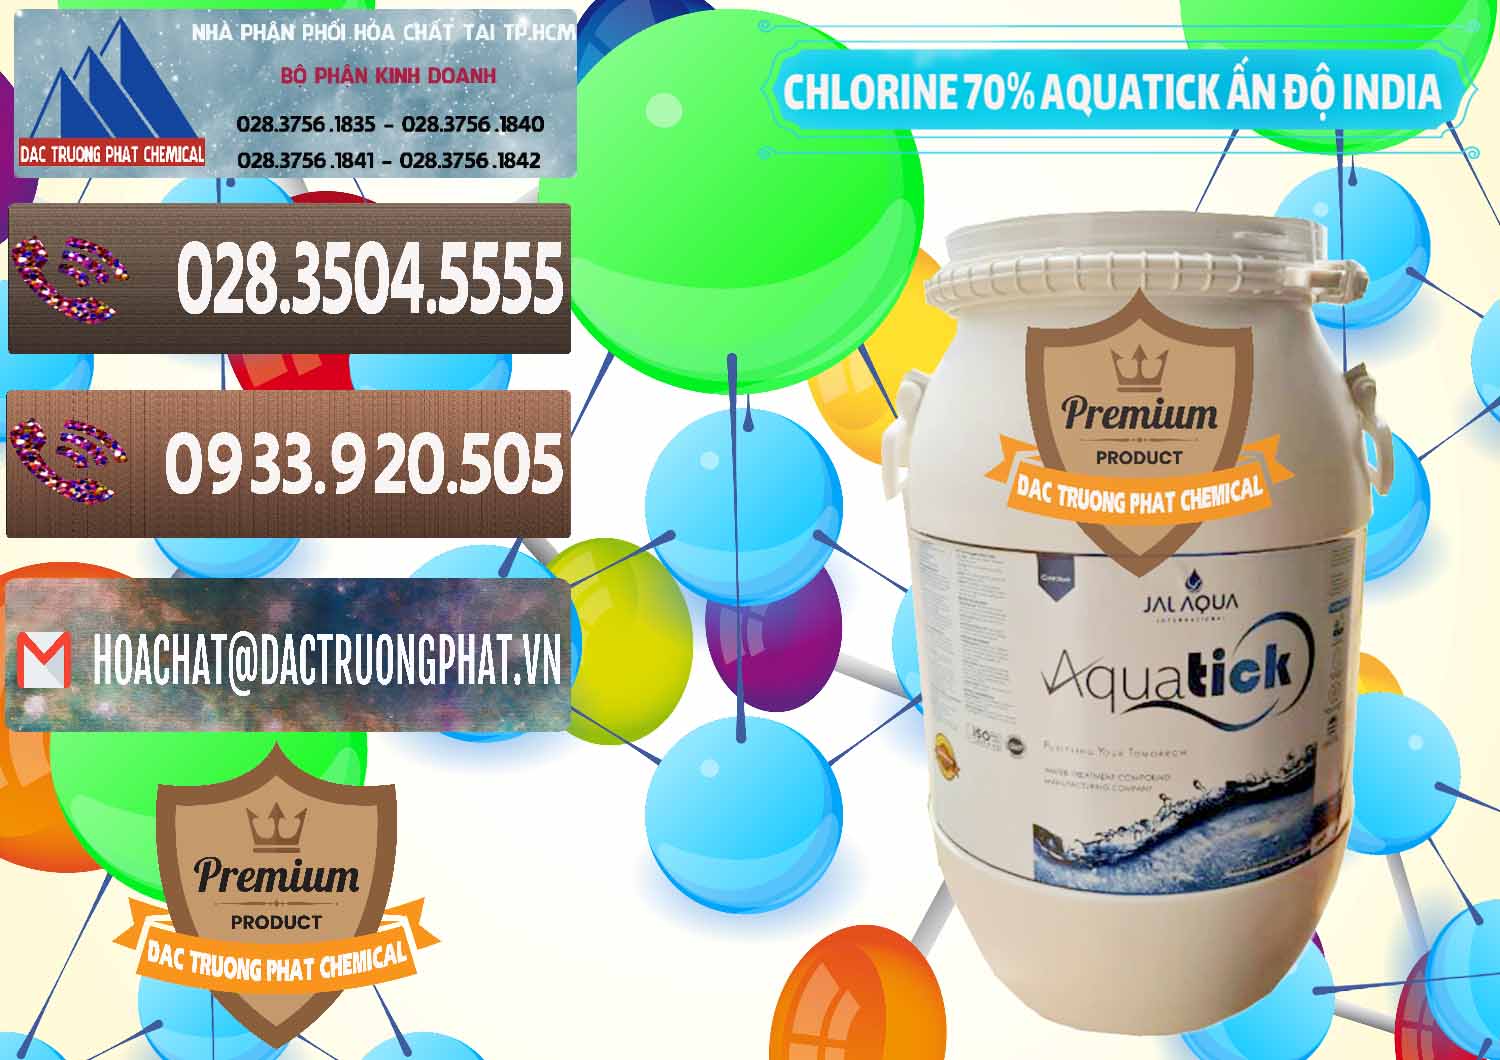 Nơi chuyên cung ứng và bán Chlorine – Clorin 70% Aquatick Jal Aqua Ấn Độ India - 0215 - Công ty chuyên cung cấp và bán hóa chất tại TP.HCM - hoachatviet.net